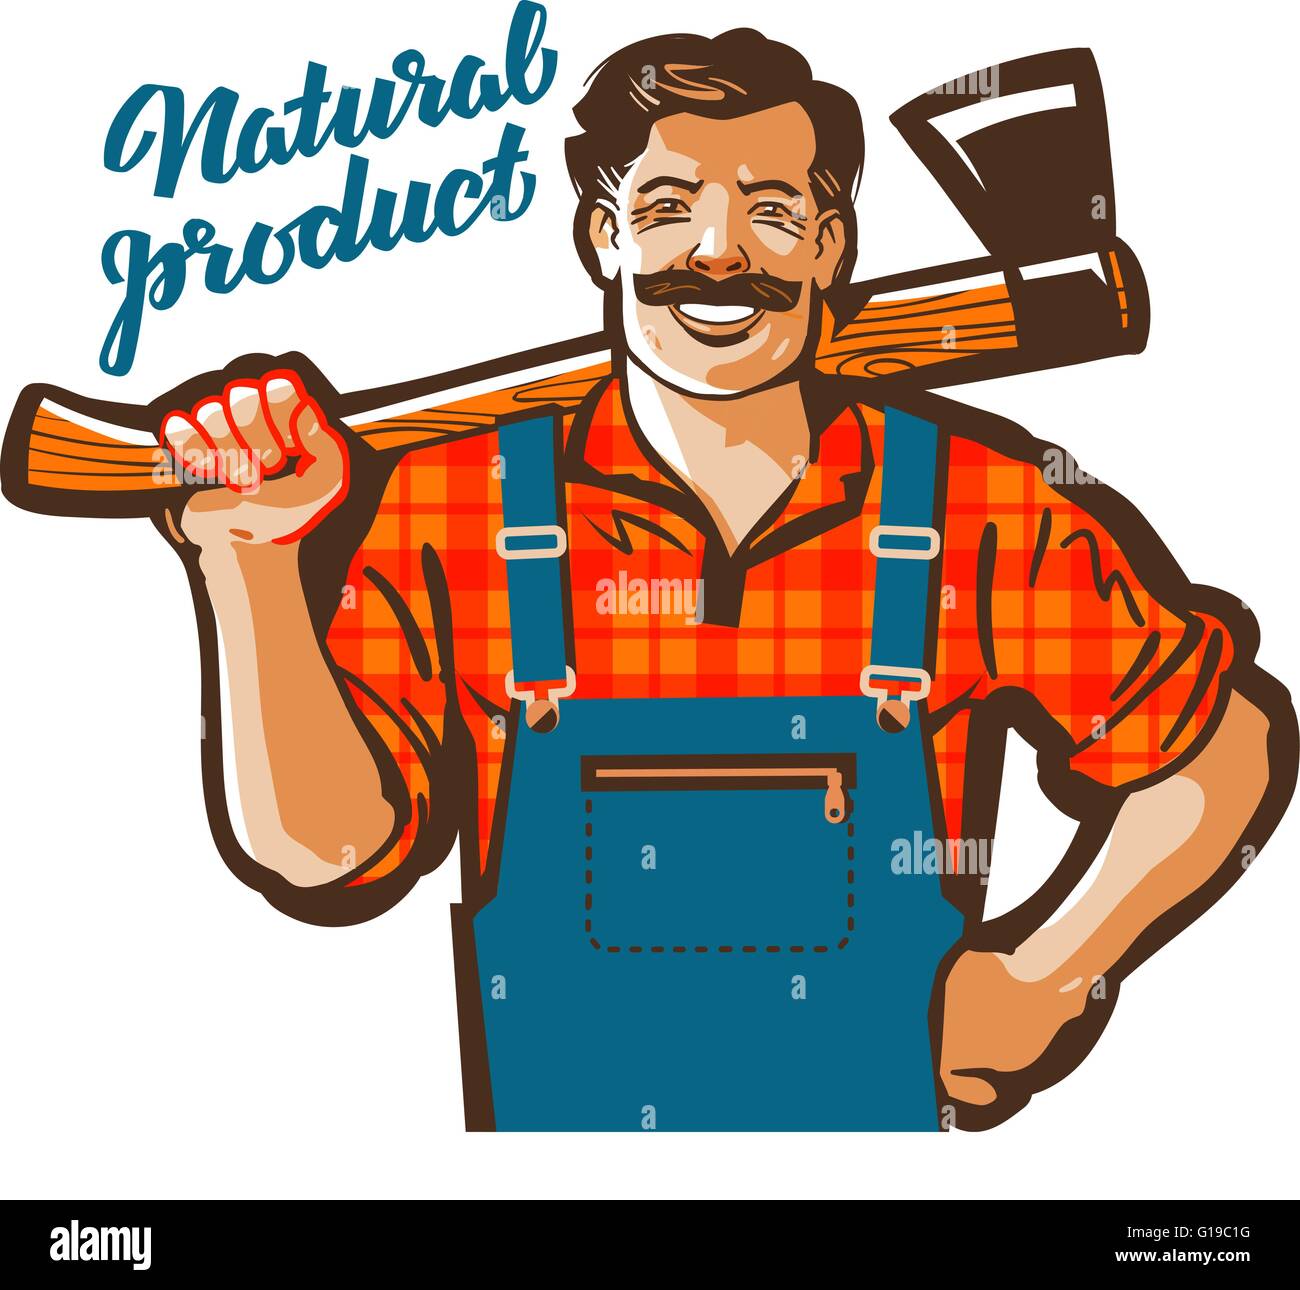 funny cartoon carpenter or lumberjack. vector illustration Stock Vector